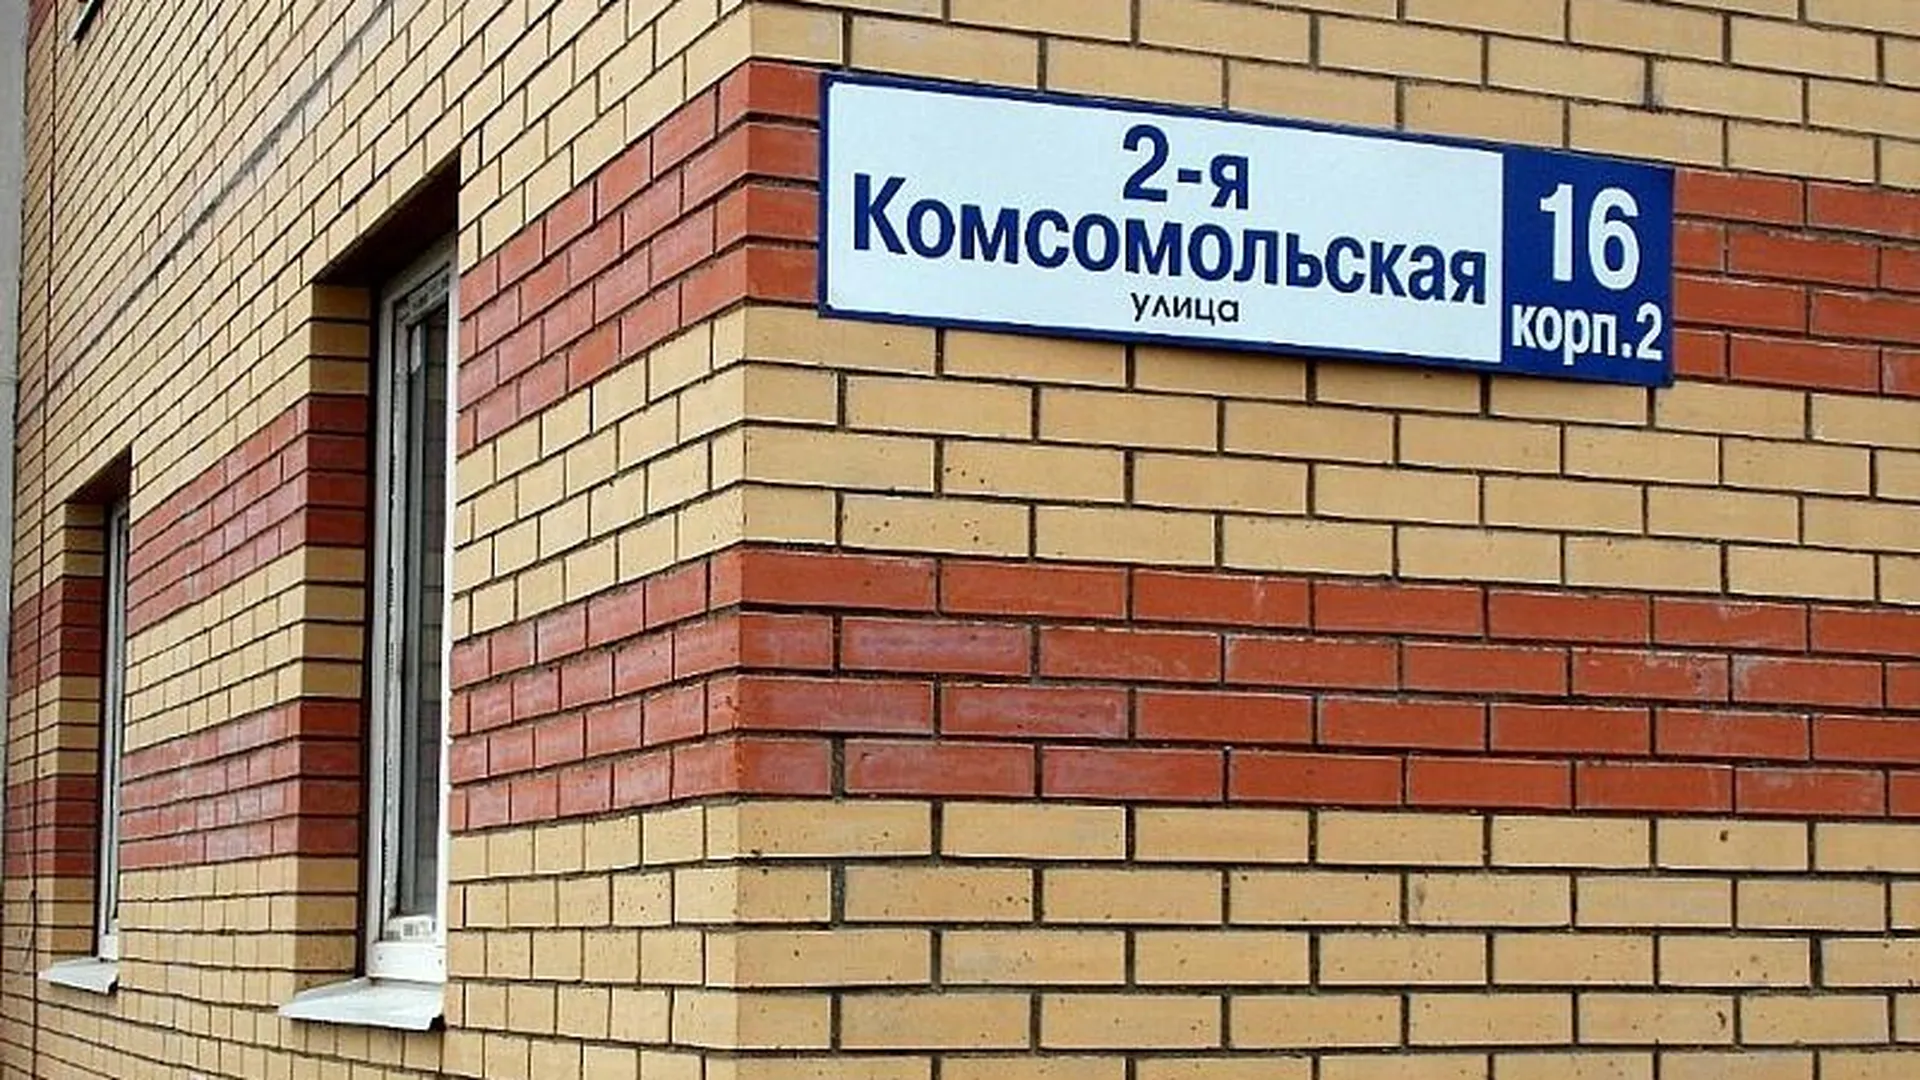 Жители дома в Дмитрове за месяц переплатили за воду 60 тыс рублей